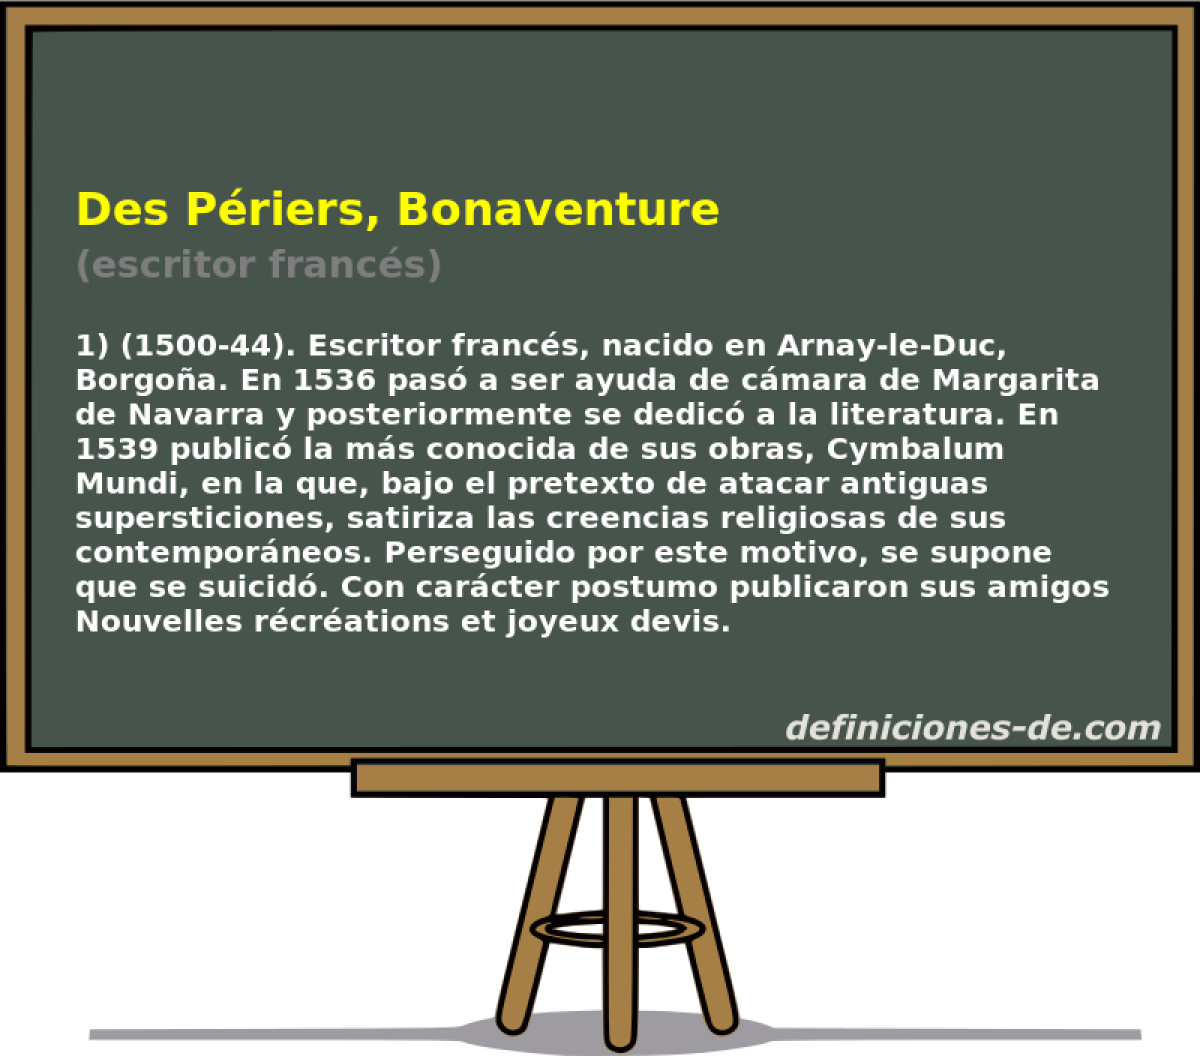 Des Priers, Bonaventure (escritor francs)